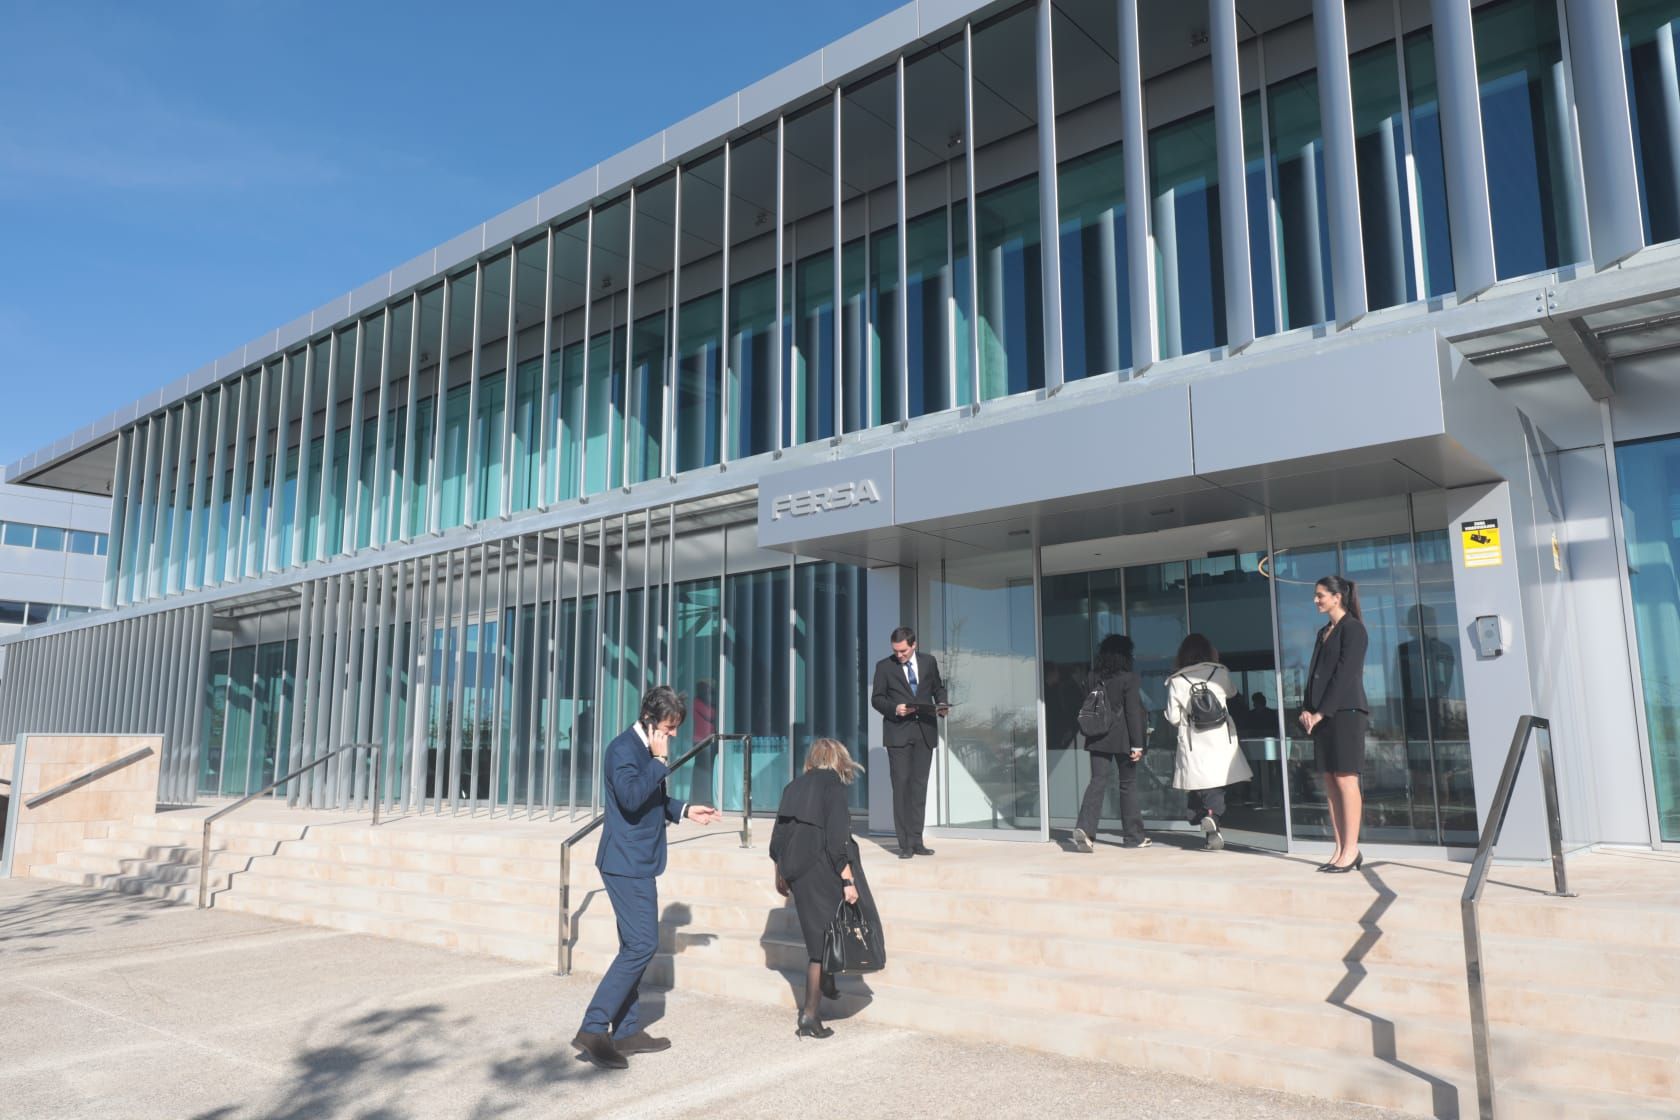 En imágenes | Inauguración del centro de innovación de Fersa en PLAZA